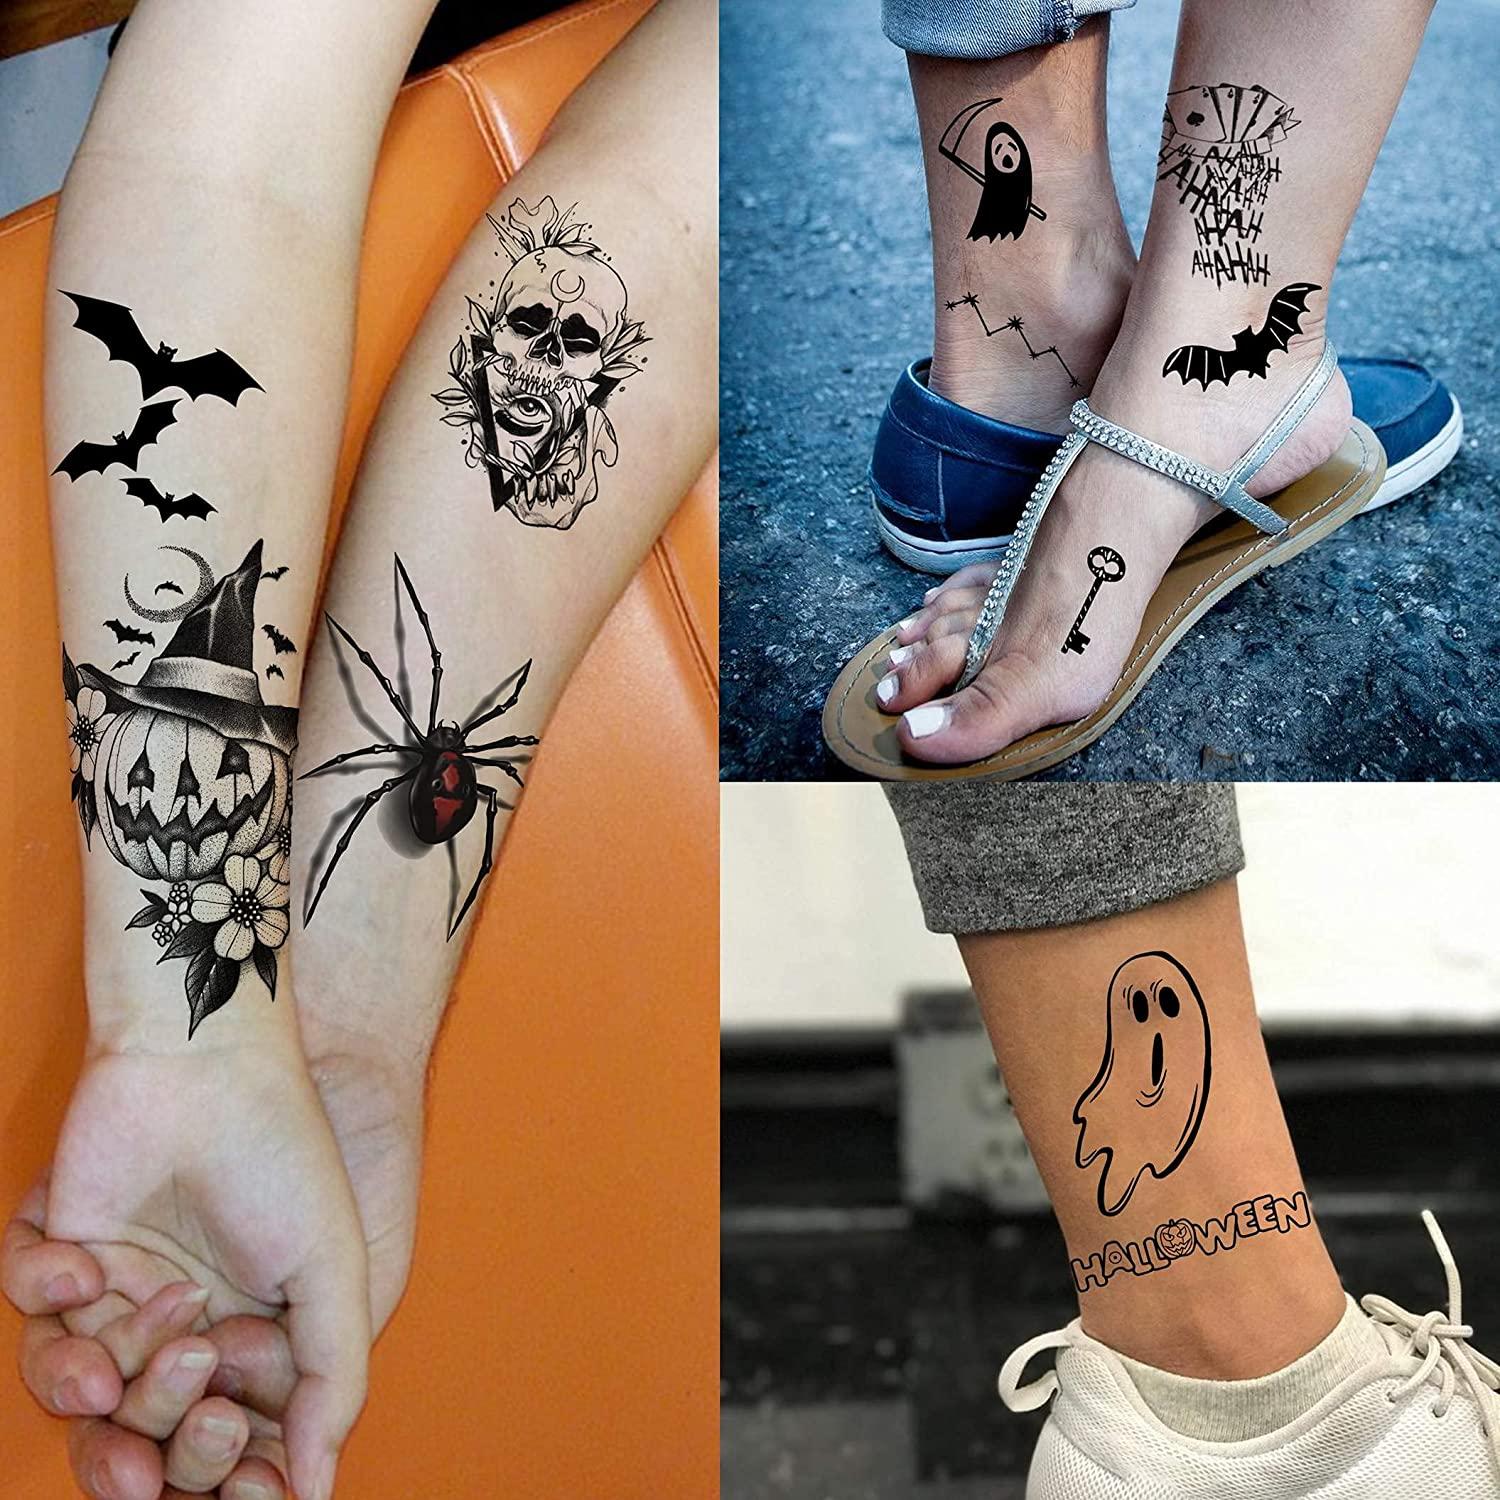 Prosthetic Sleeve “Tattoo sleeve art V3” Socket Sleeve – amputeesockprints